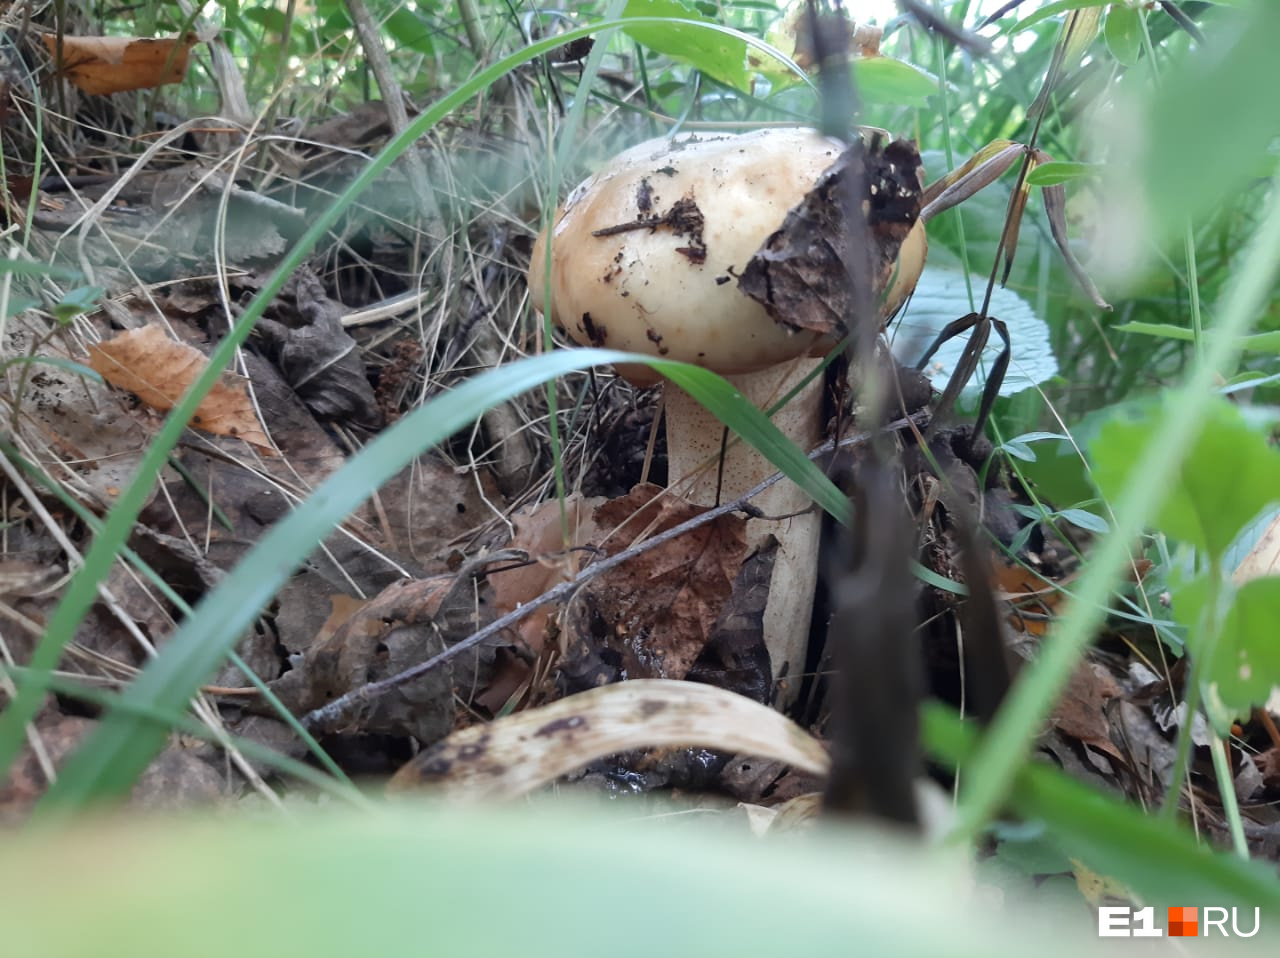 Из-за теплой и влажной погоды в лесу много грибов